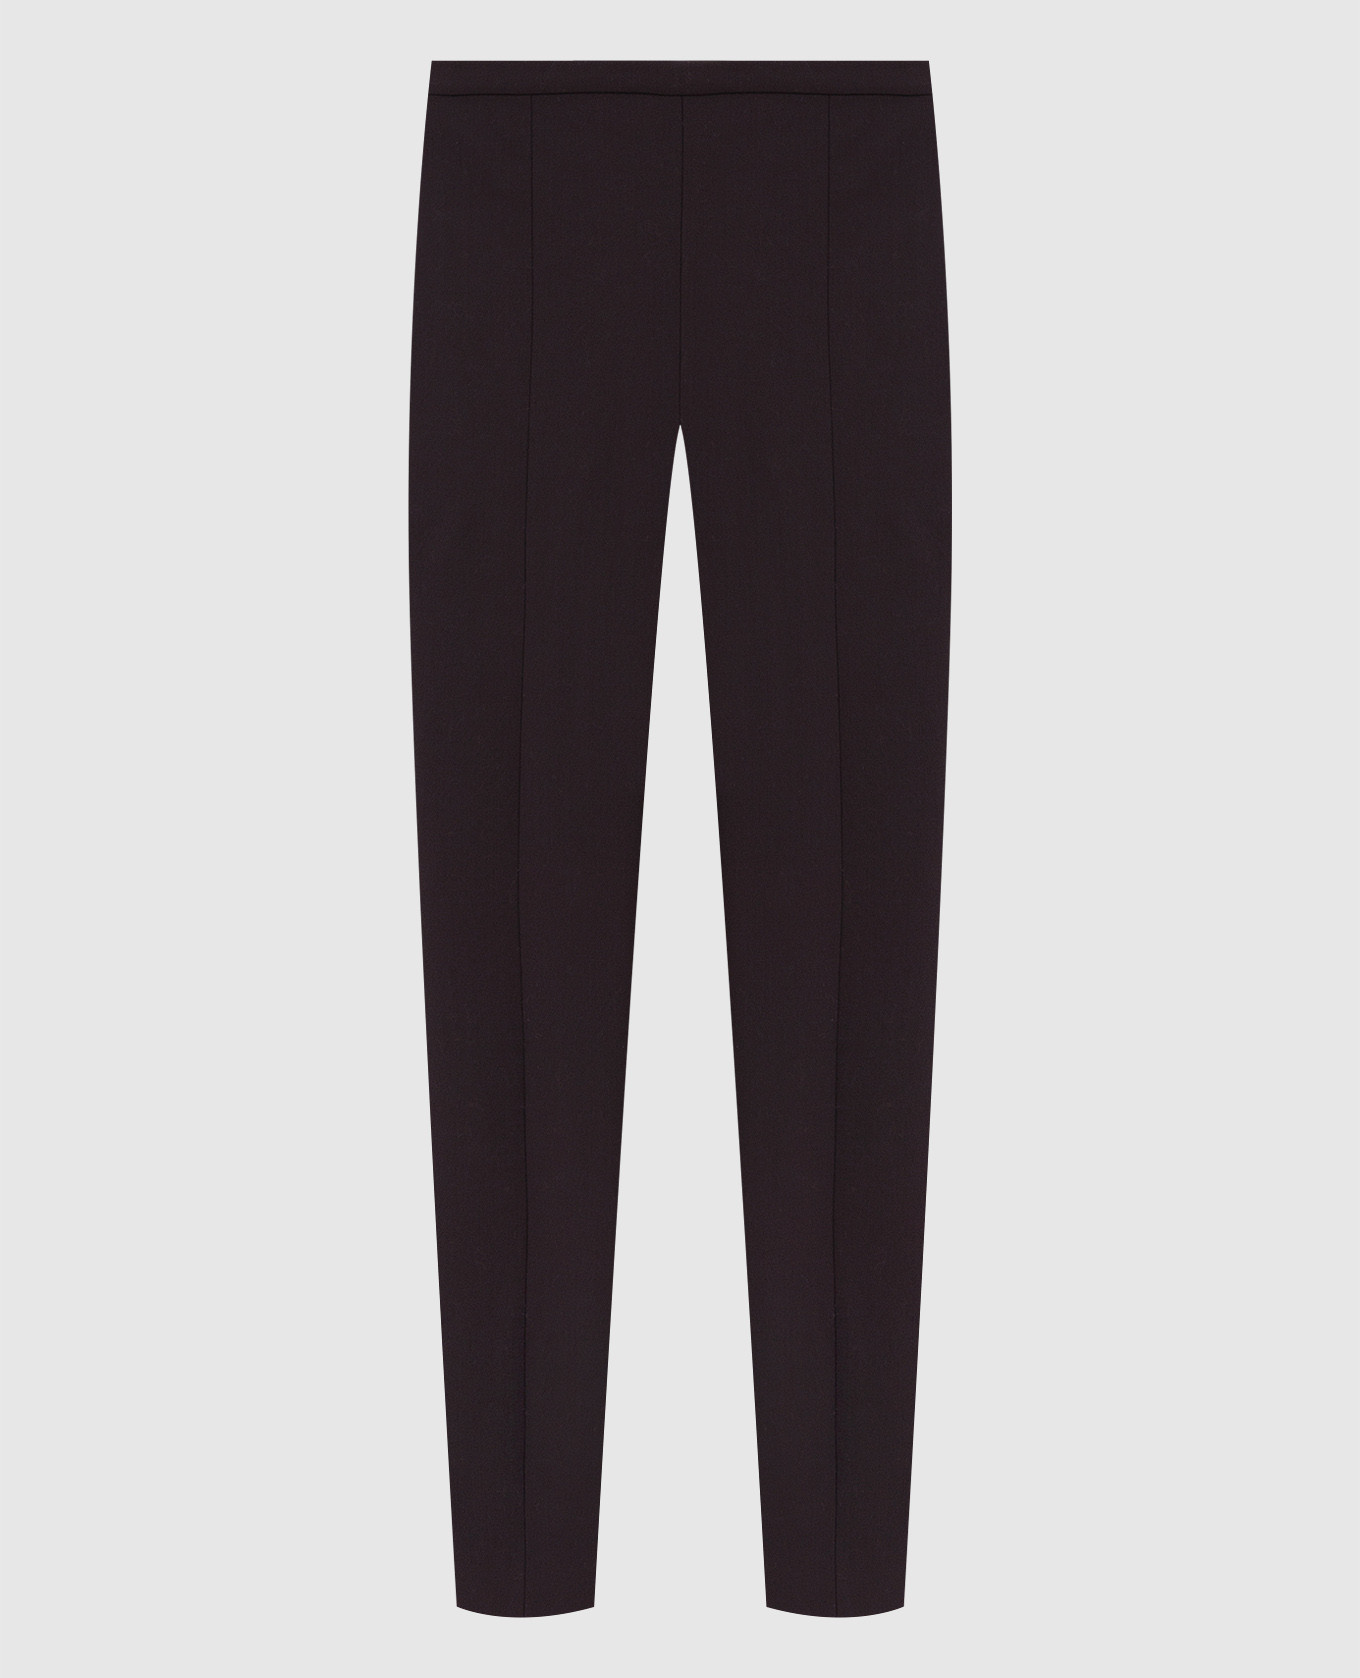 Темно-коричневые брюки Sovino из шерсти